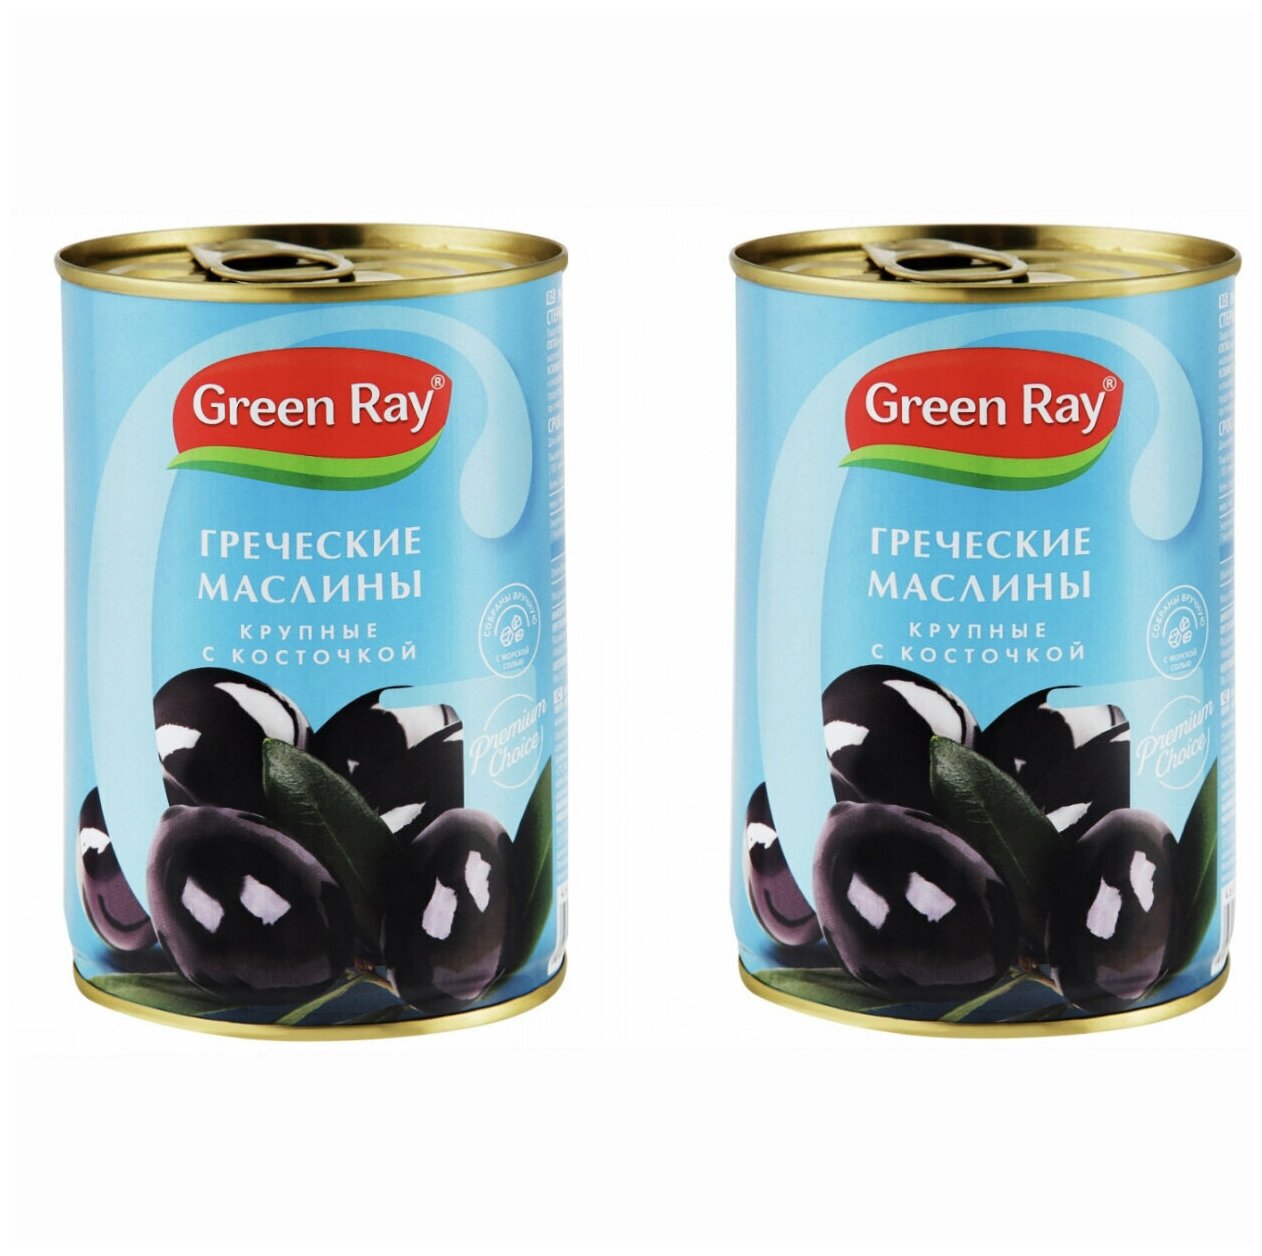 Греческие маслины гигант с косточкой Green Ray 420 гр комплект из 2 банок